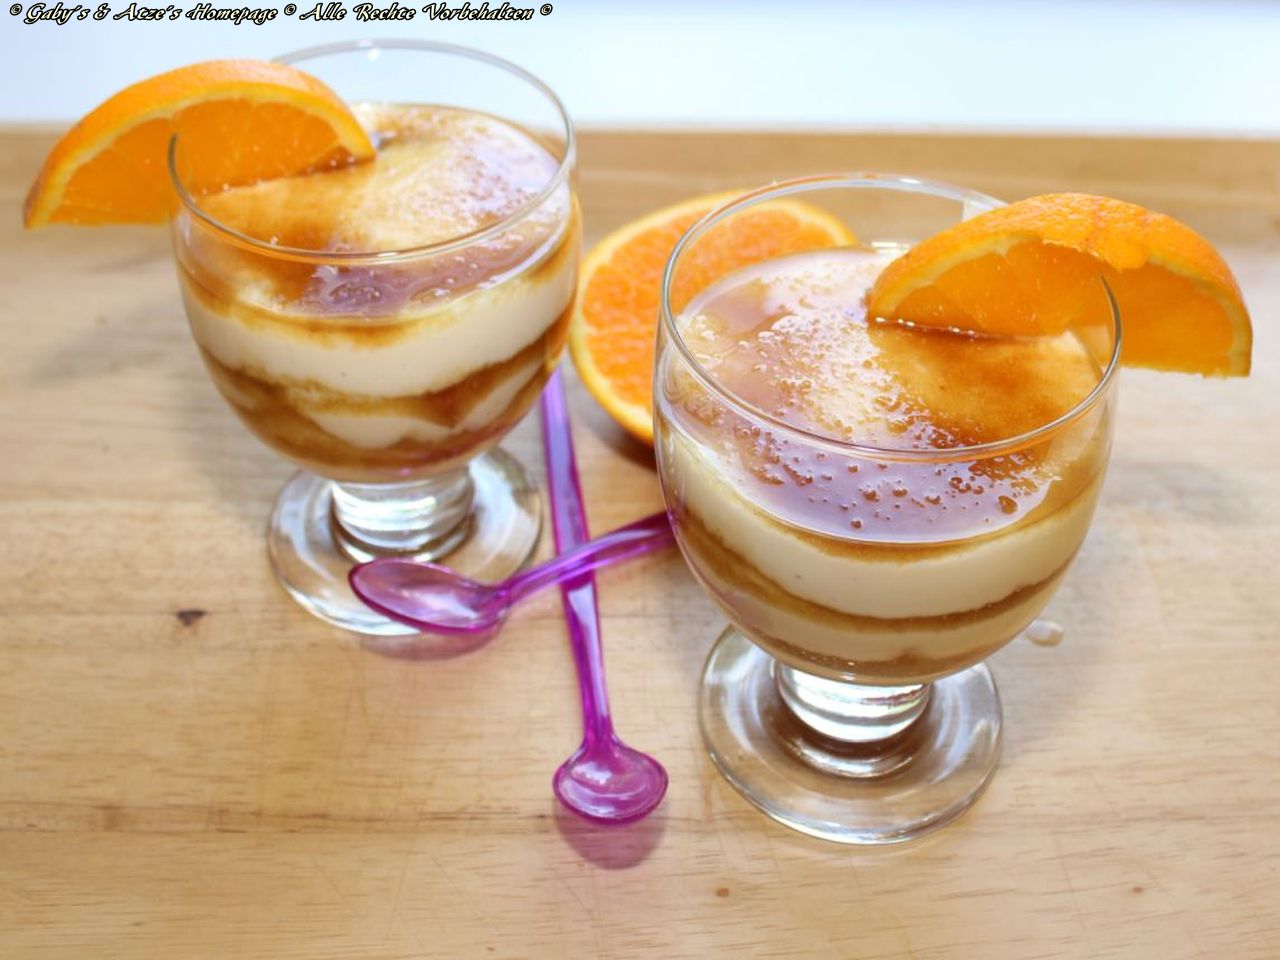 Orangen-Joghurt Dessert - Gaby´s und Atze´s Homepage